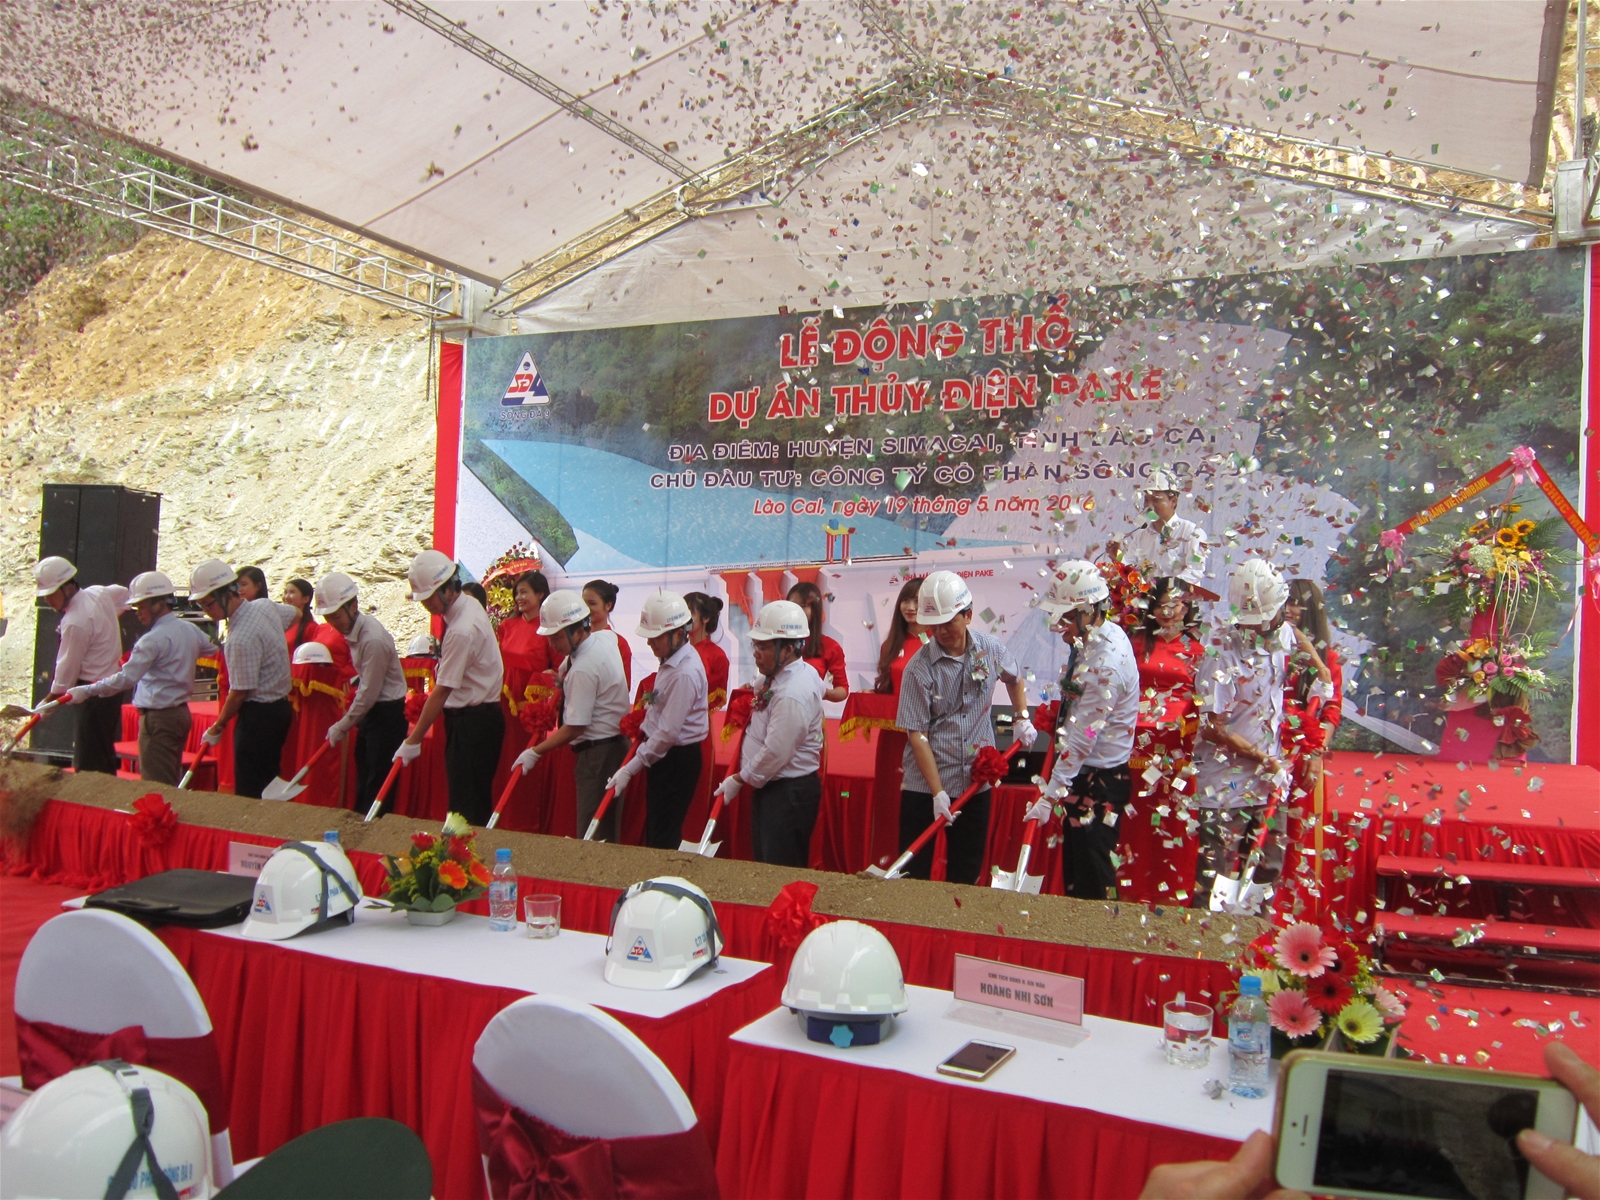 Công ty cổ phần Sông Đà 9 tổ chức Lễ động thổ Dự án thủy điện Pake